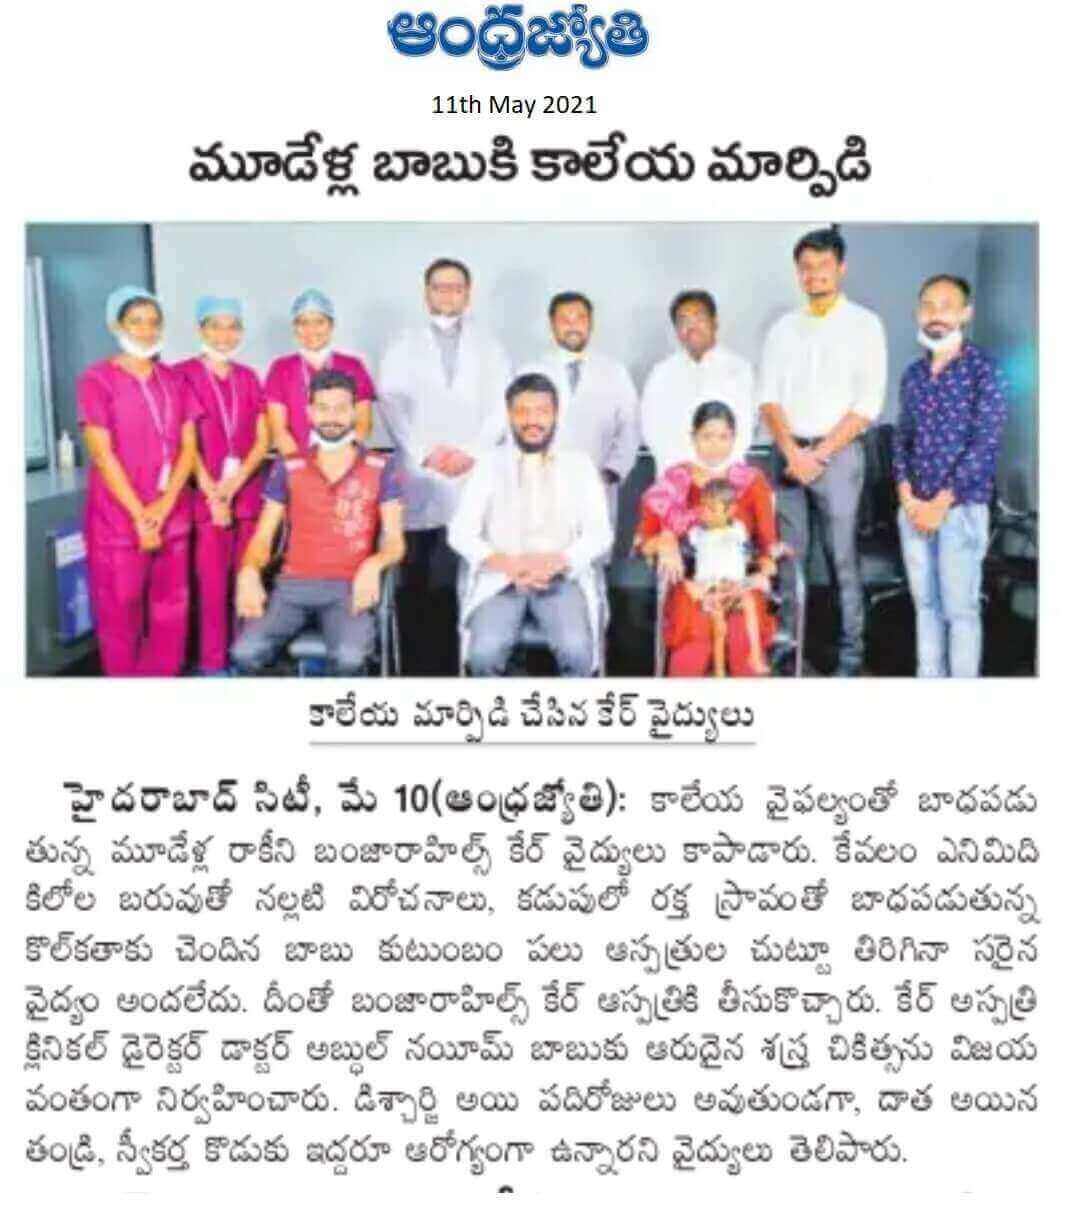 3 سنوات من العمر يخضع لعملية زرع الكبد من قبل الدكتور محمد عبدون نعيم - المدير السريري و HOD - معهد كير لأمراض الجهاز الهضمي وزراعة الكبد بواسطة Telugu Daily